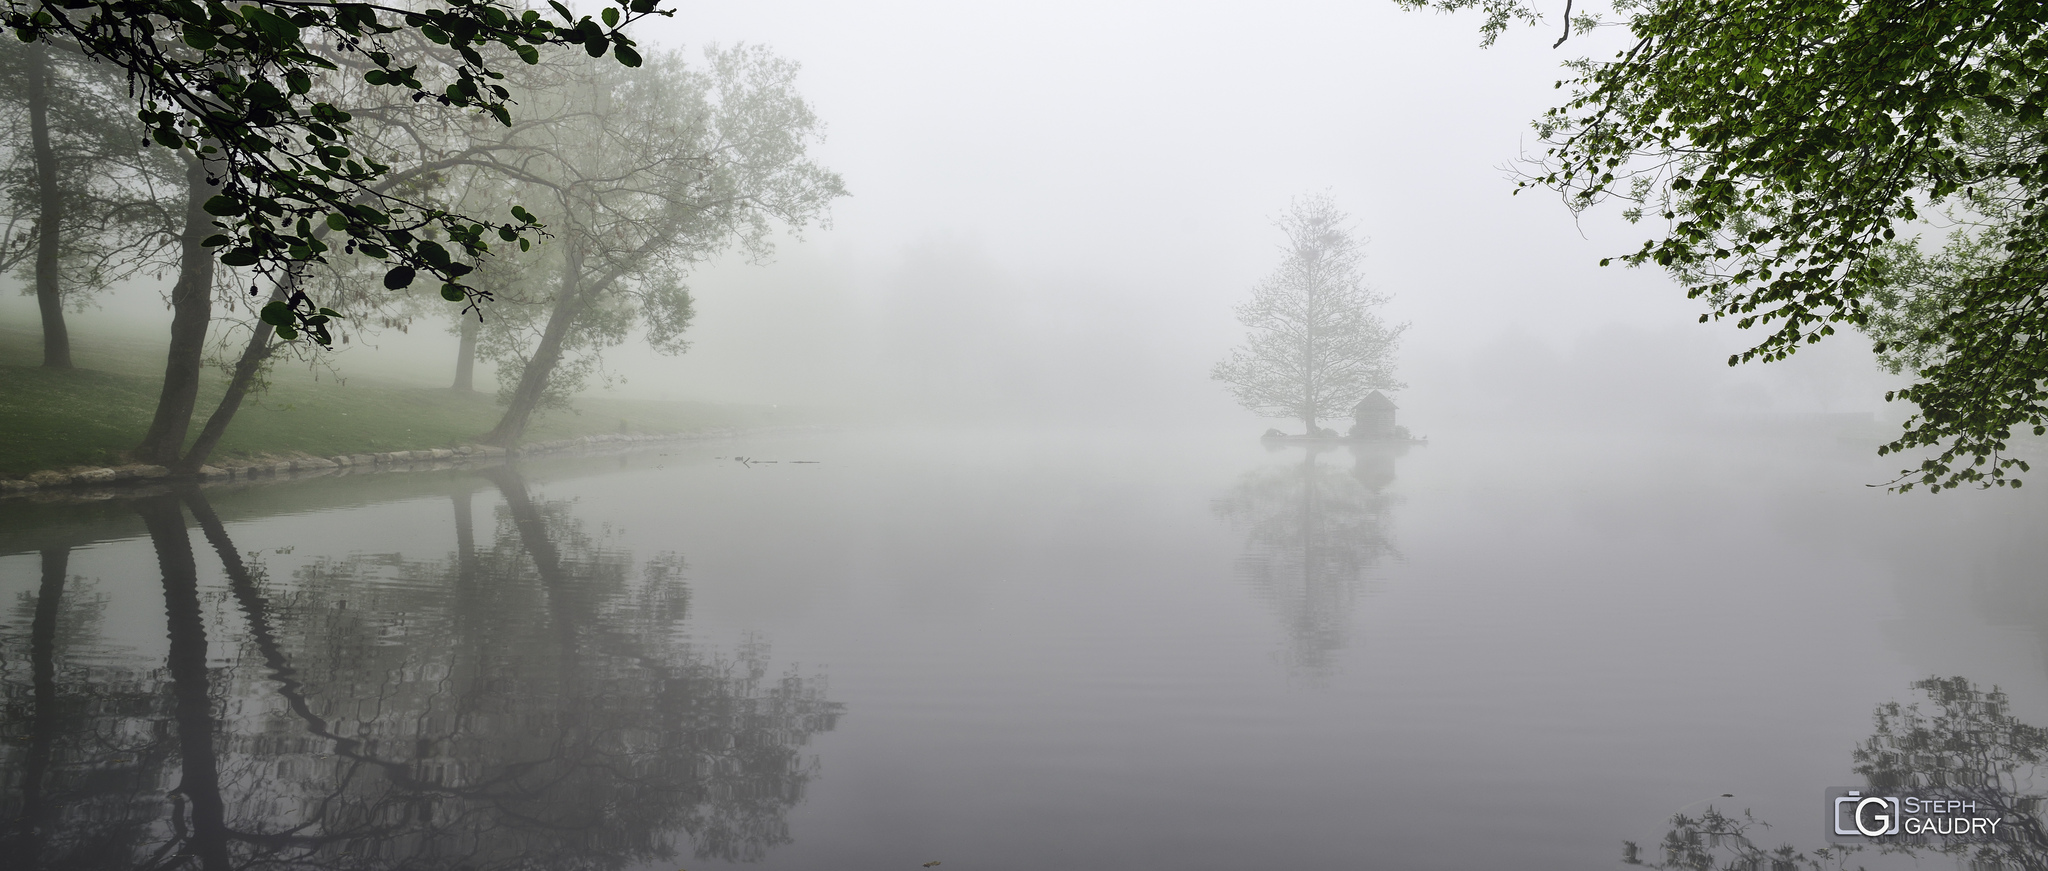 Domaine de Wégimont sous le brouillard [Click to start slideshow]